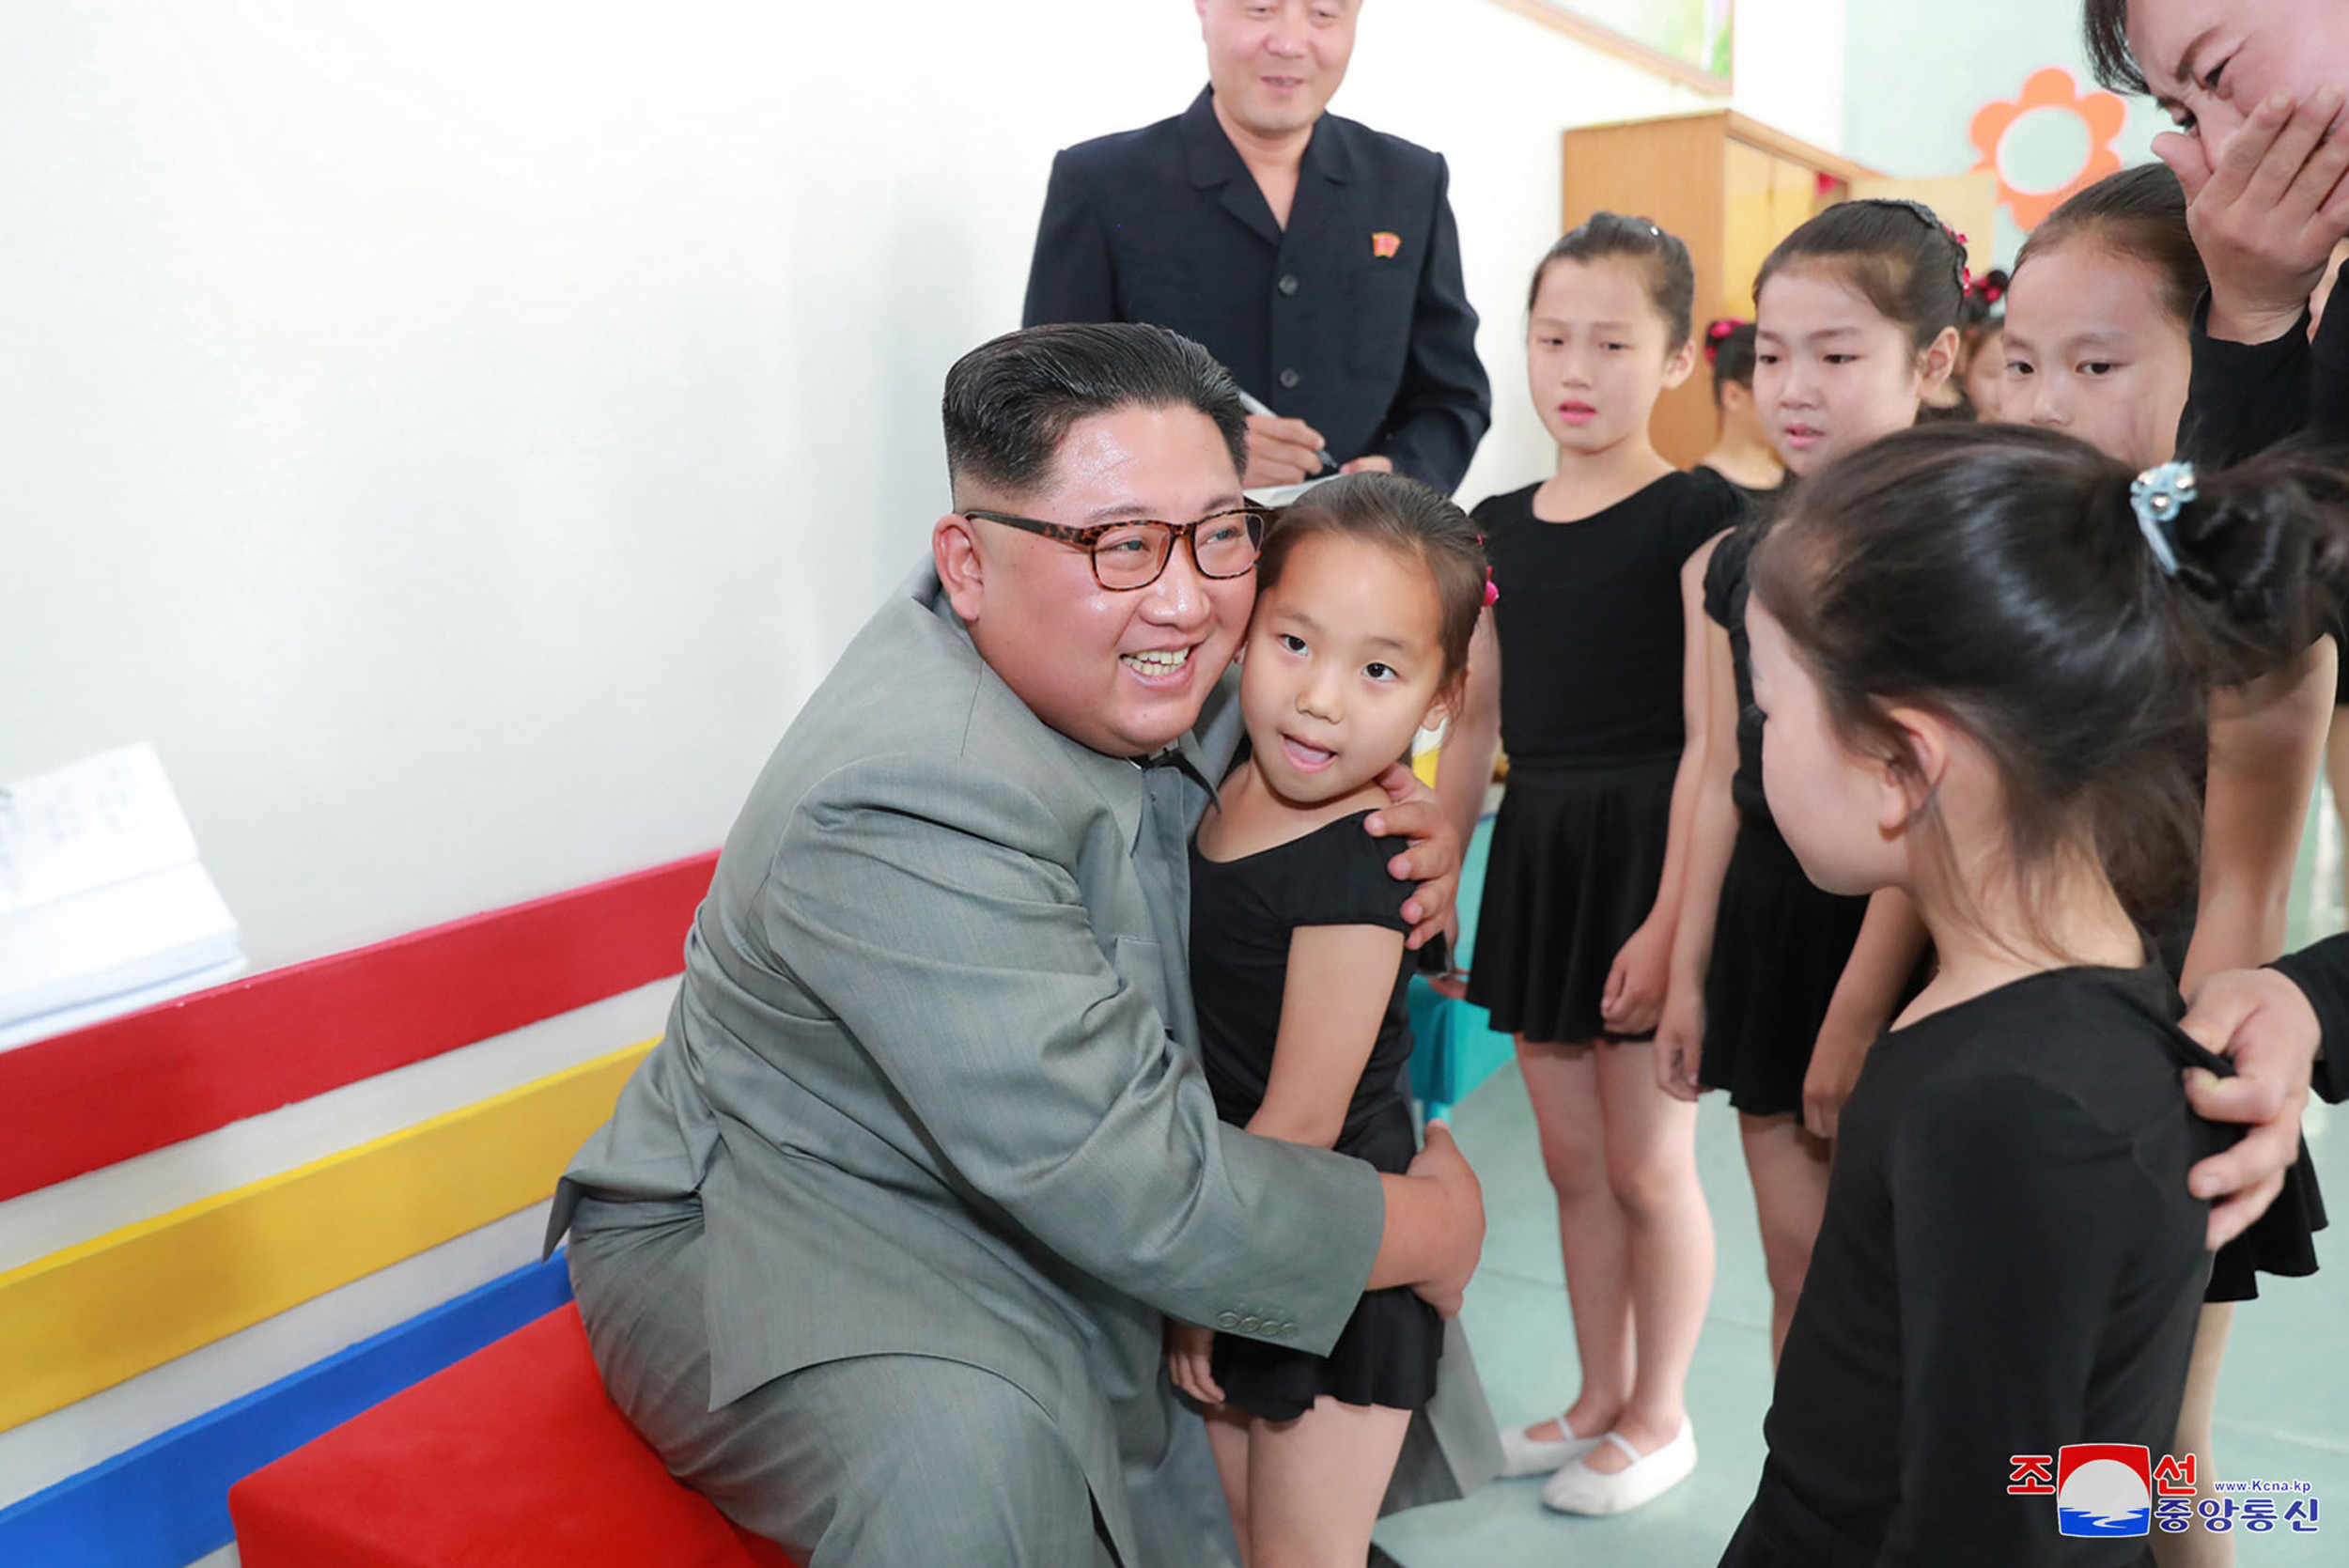 Kim Jong-un îmbrățișând copii, la o zi după ce ar fi executat mai mulți oficiali - Imaginea 3